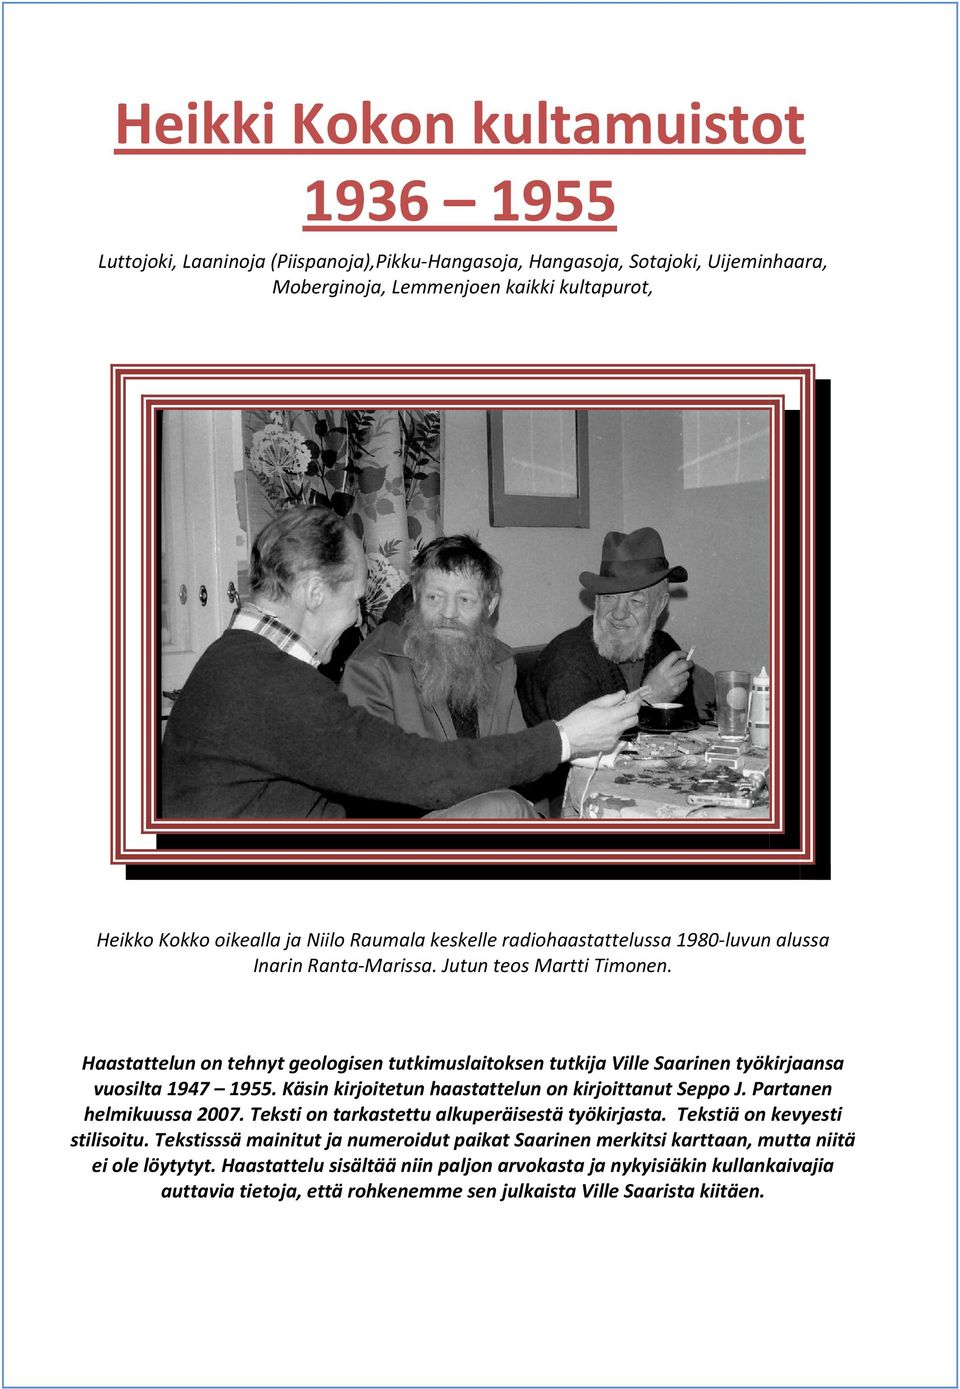 Haastattelun on tehnyt geologisen tutkimuslaitoksen tutkija Ville Saarinen työkirjaansa vuosilta 1947 1955. Käsin kirjoitetun haastattelun on kirjoittanut Seppo J. Partanen helmikuussa 2007.